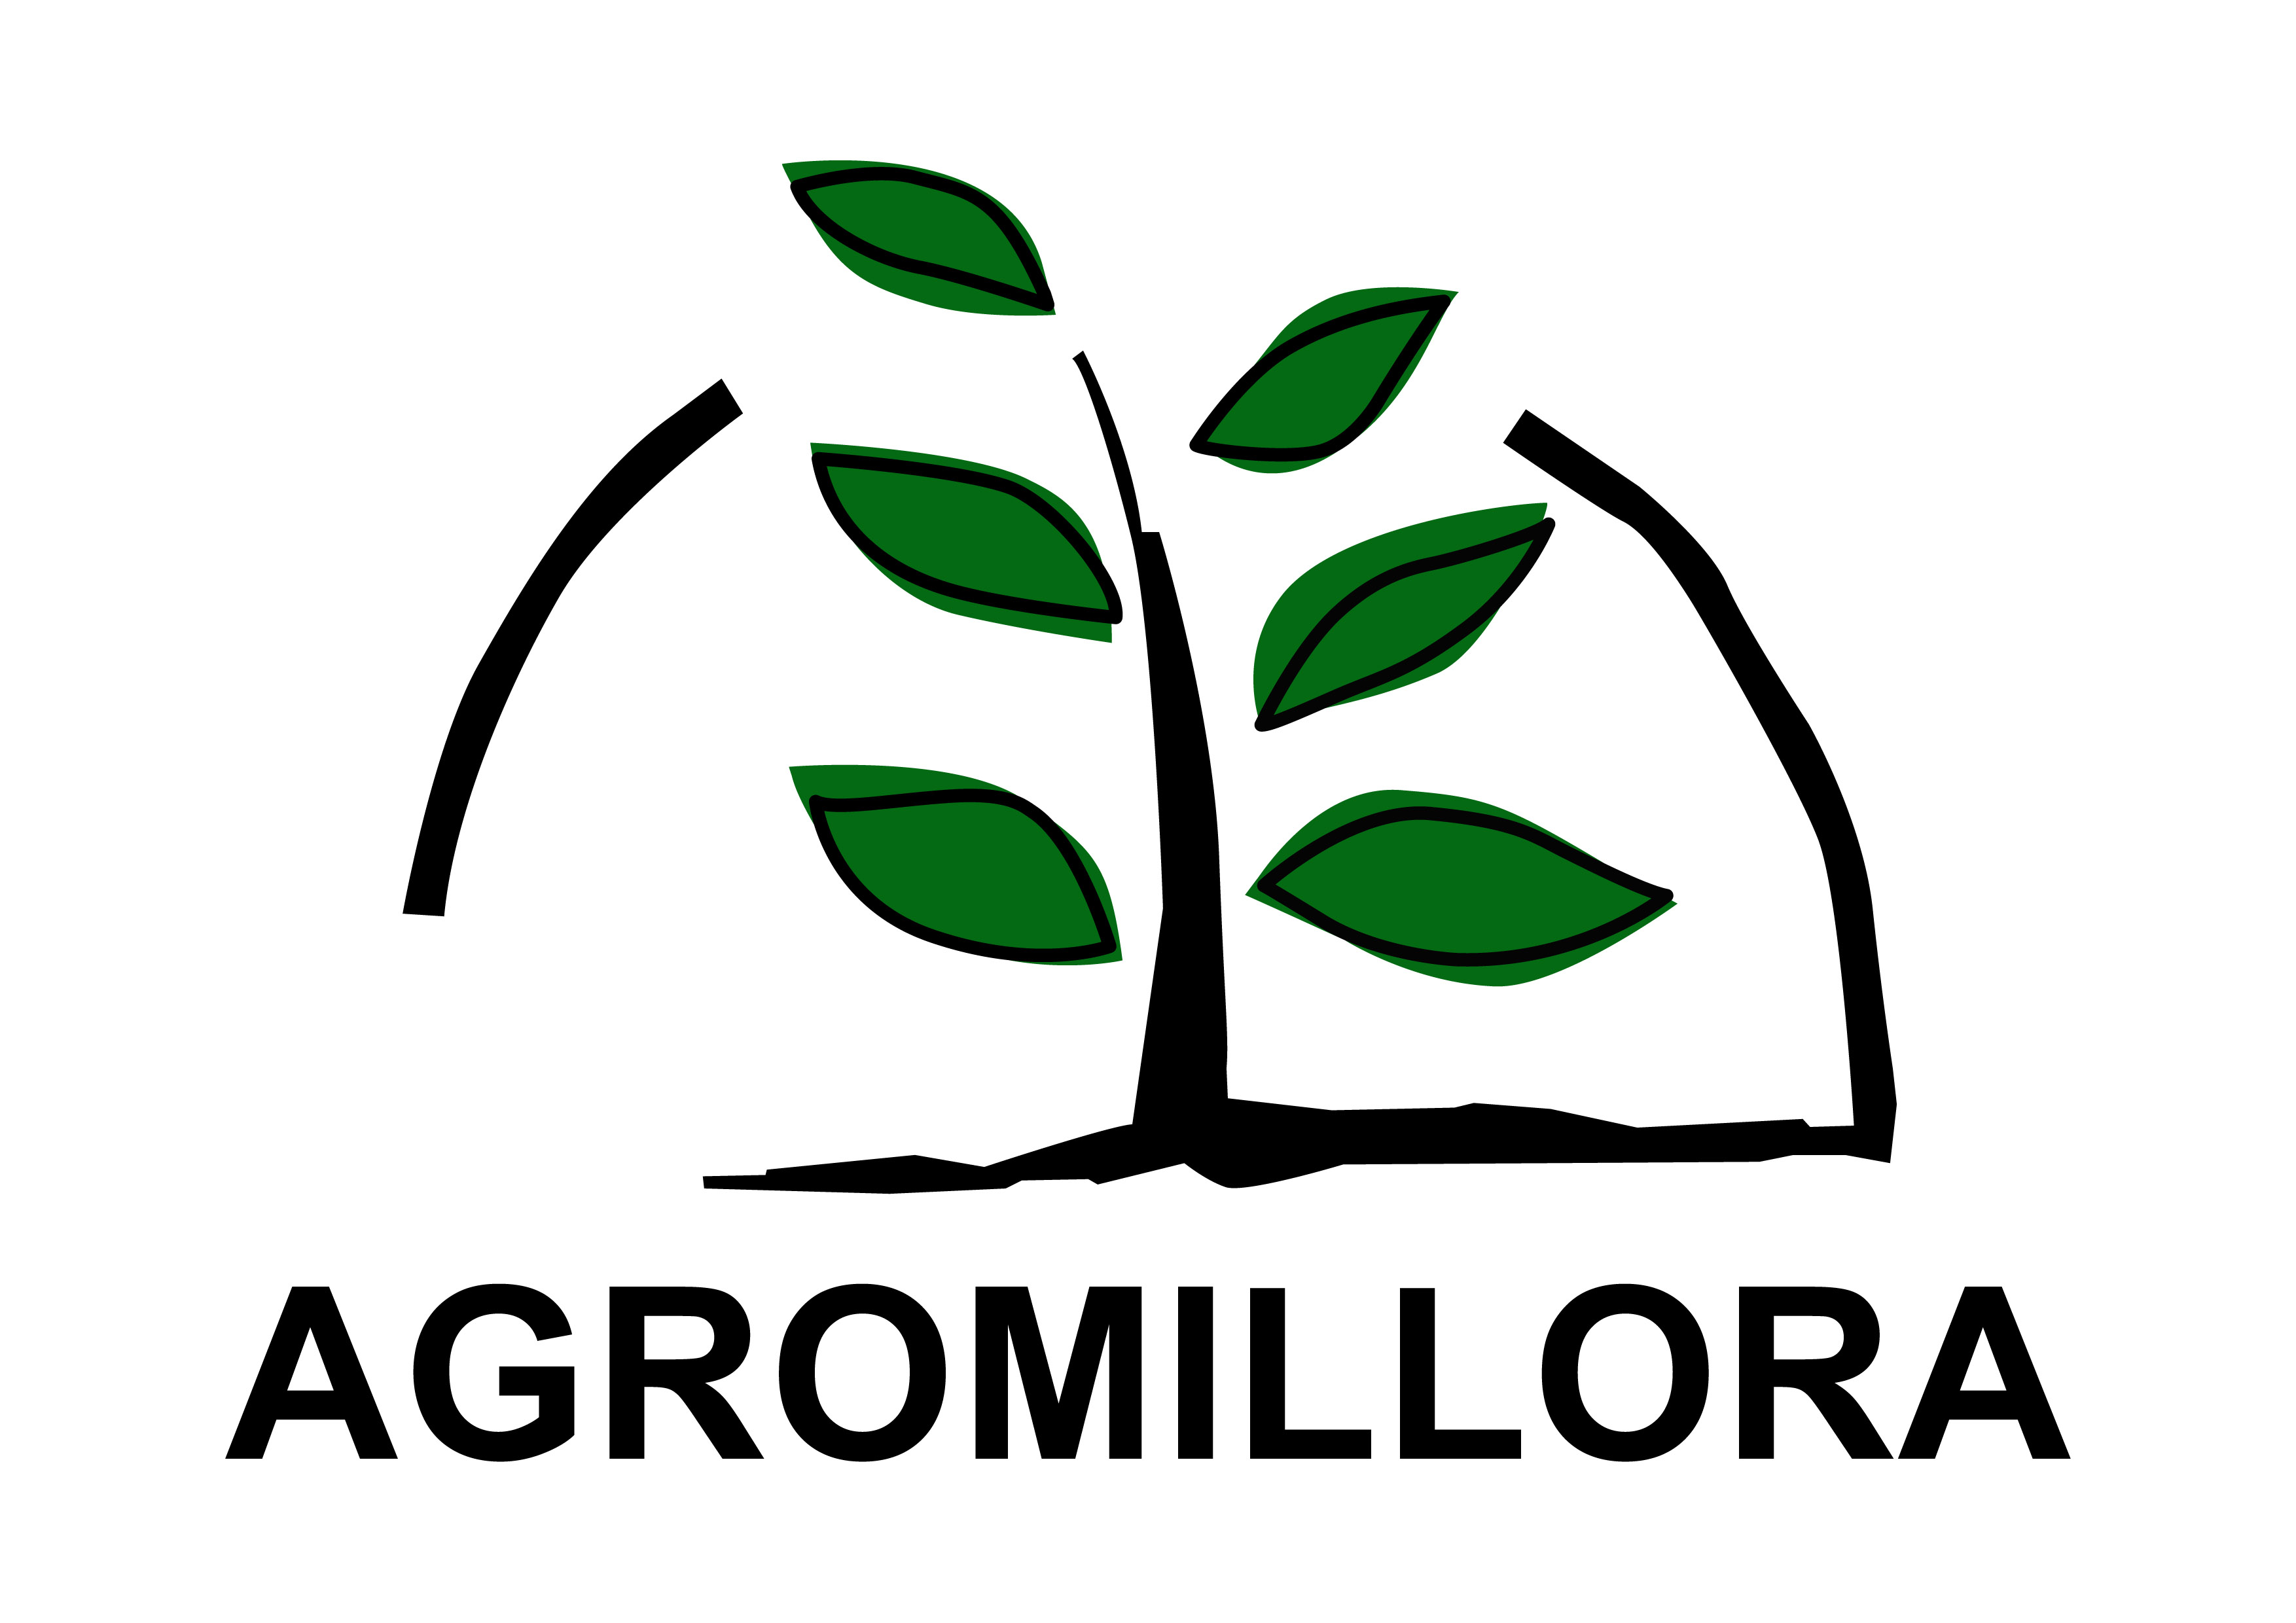 Agromillora